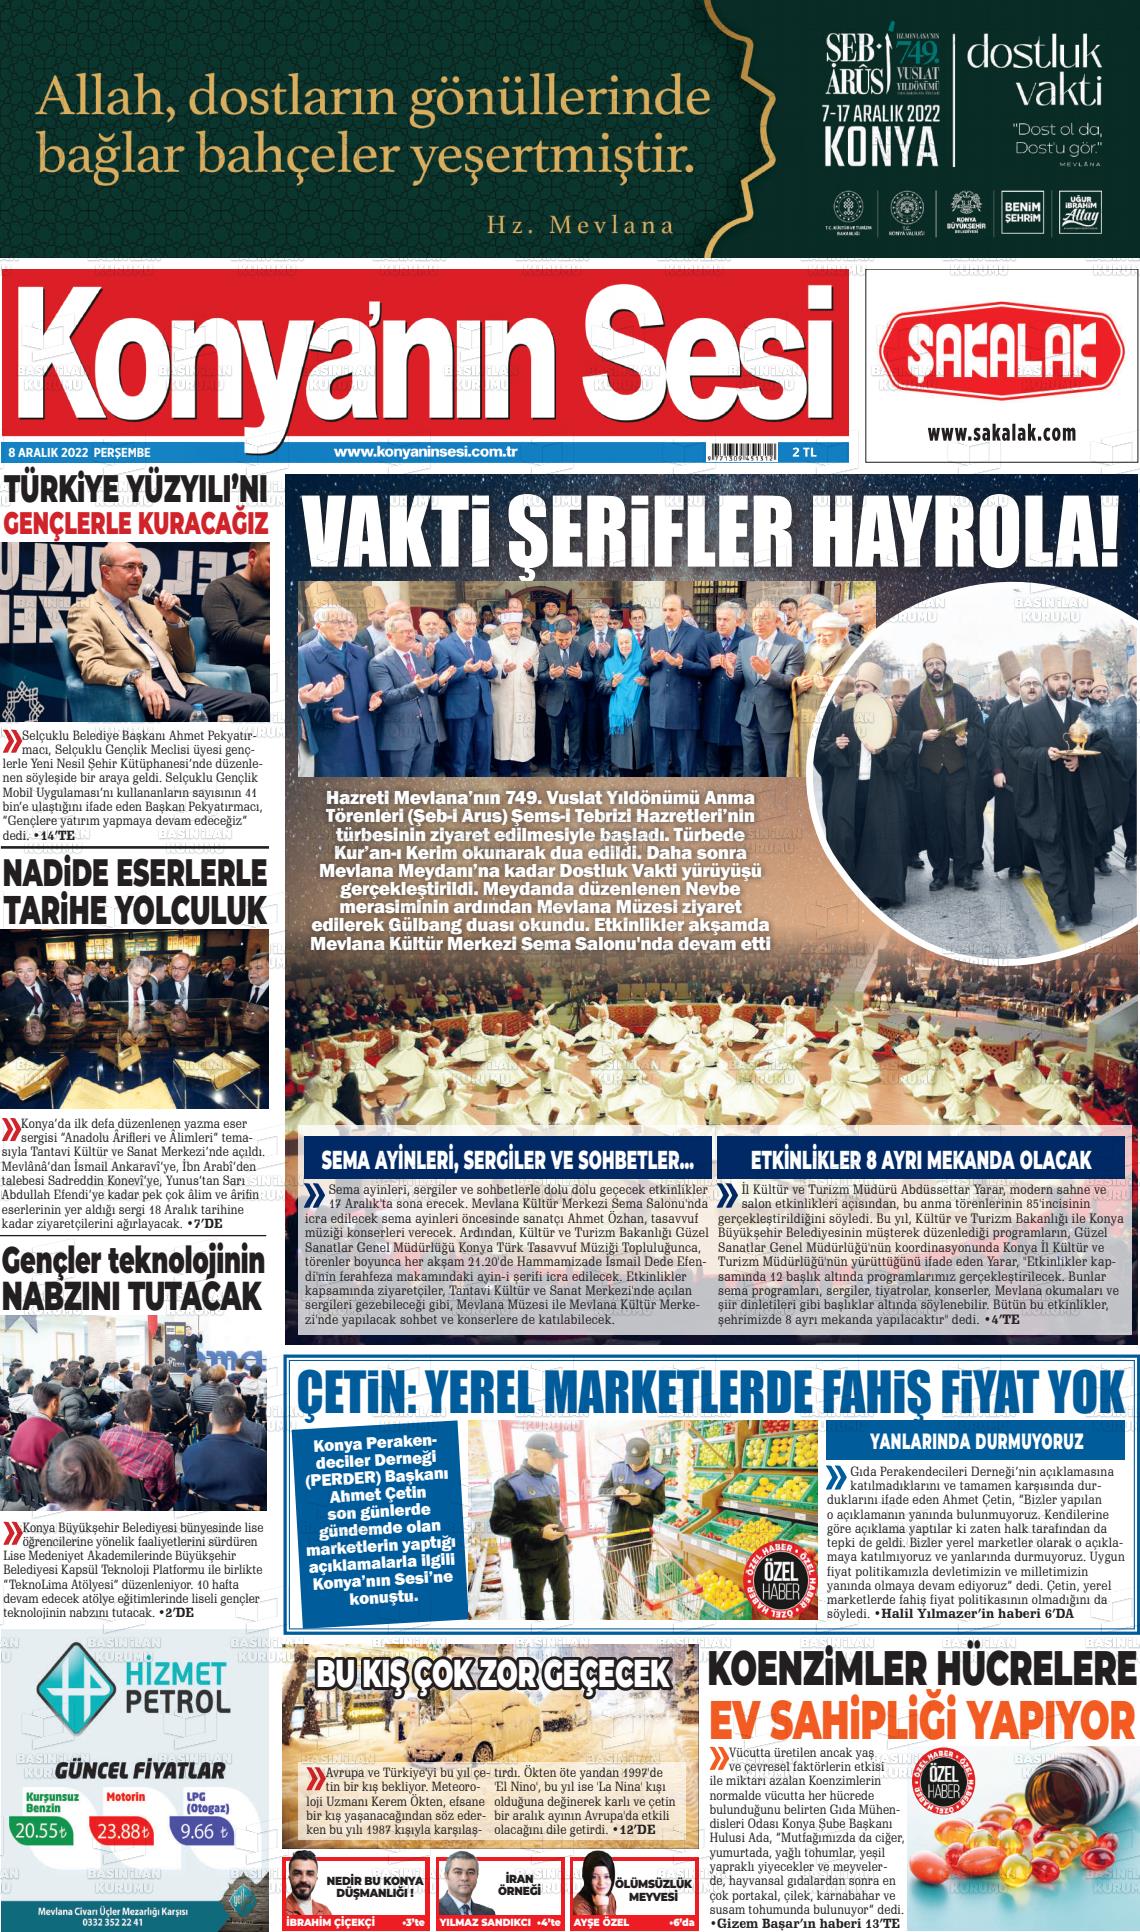 08 Aralık 2022 Konyanin Sesi Gazete Manşeti